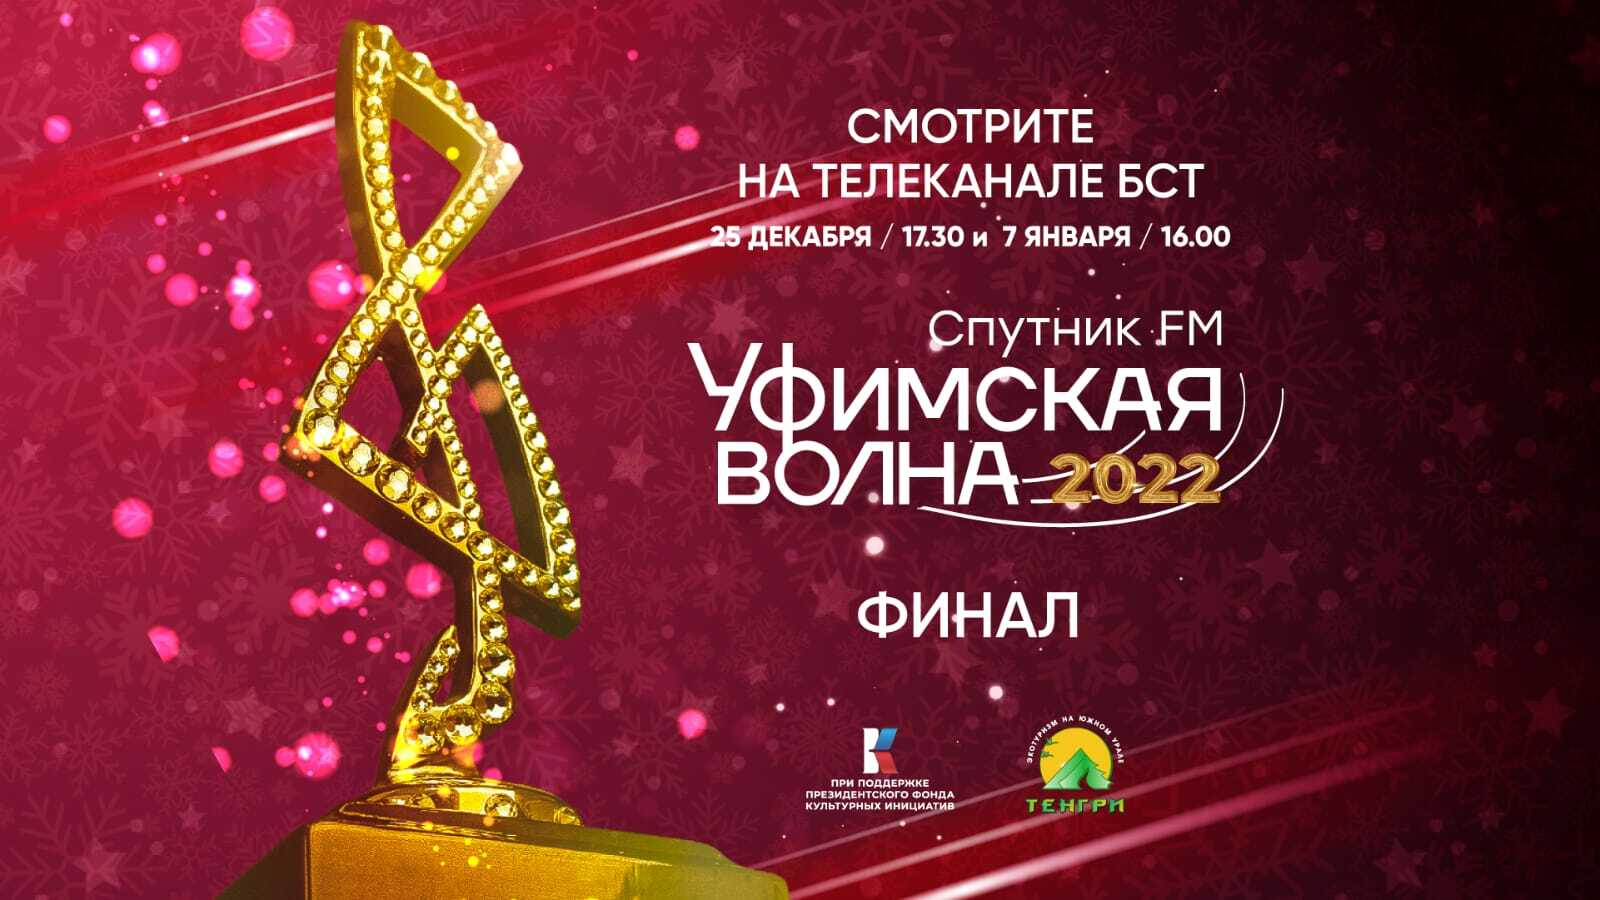 Финал музыкального конкурса «Уфимская Волна 2022» смотрите на БСТ!